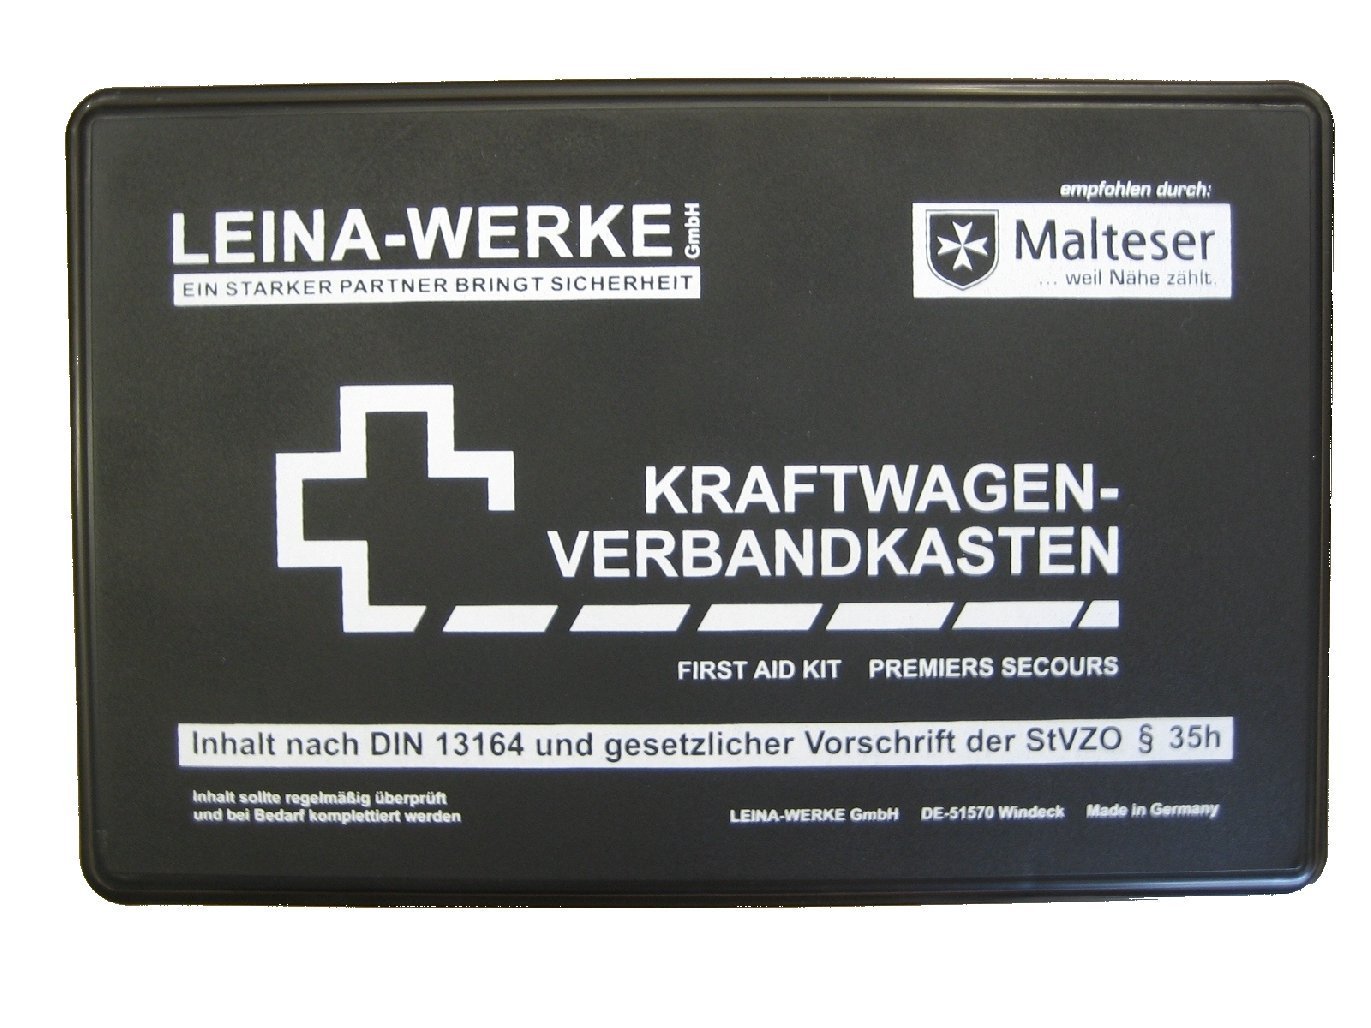 Leina-Werke Kfz-Verbandkasten (DIN 13164)